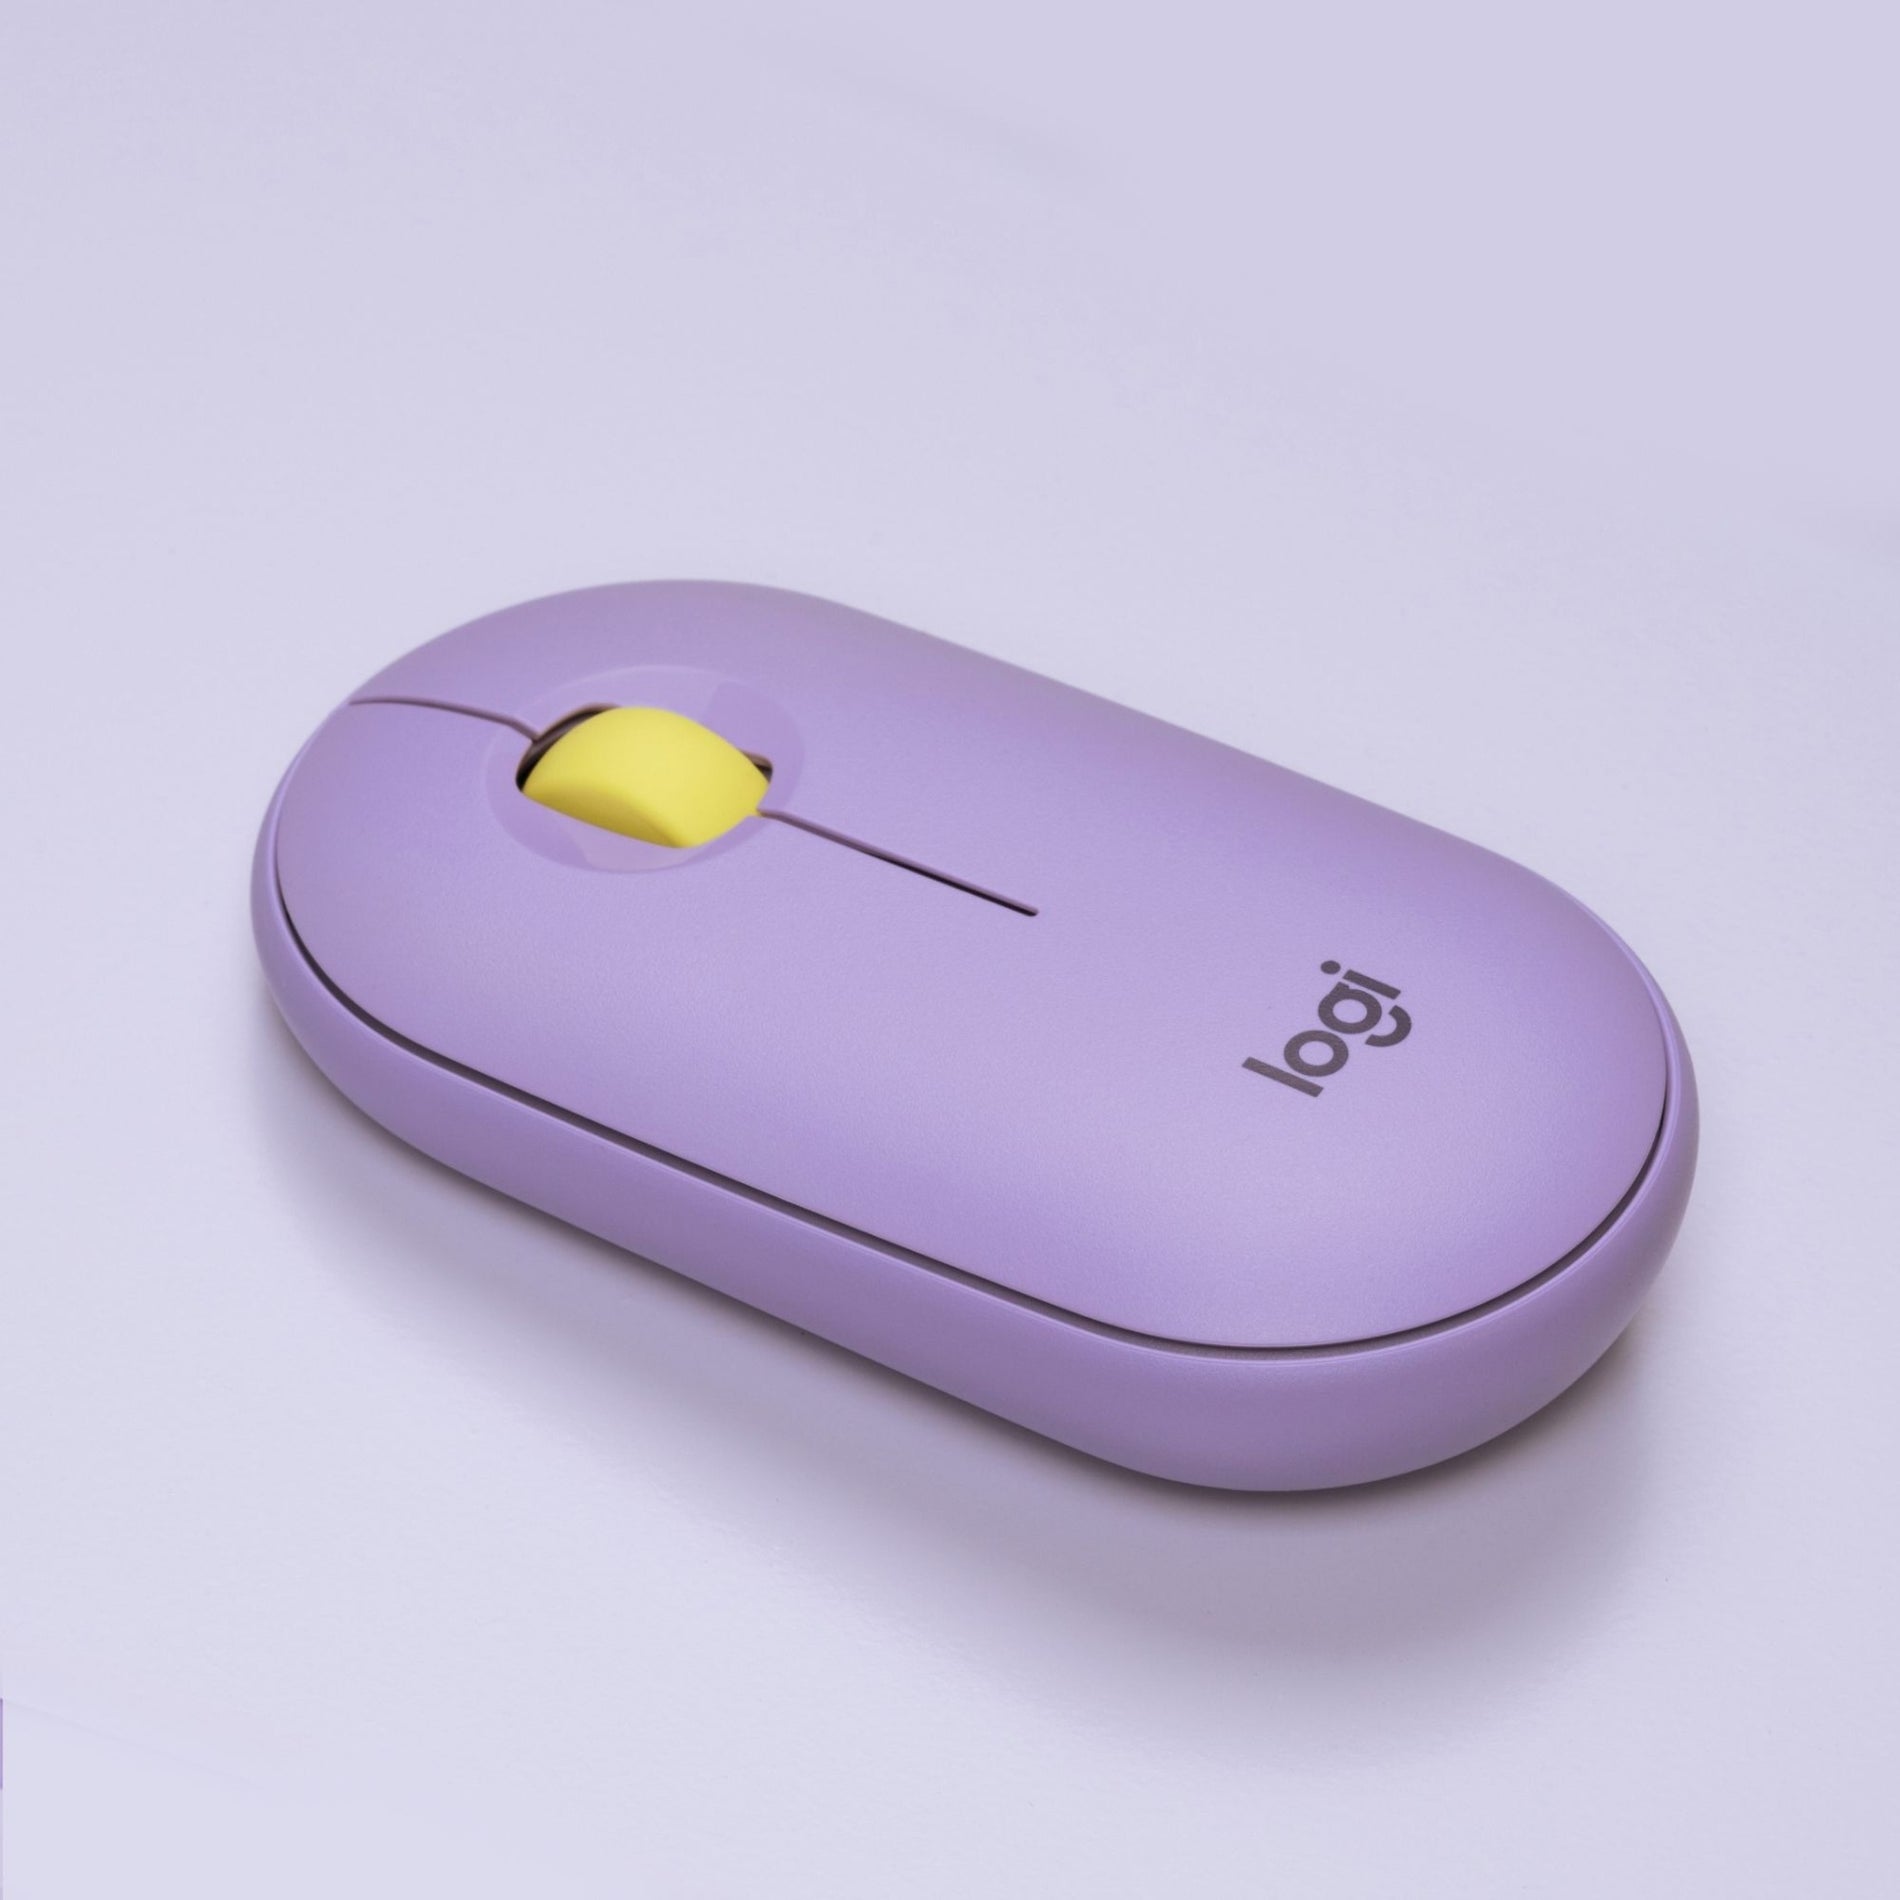 Logitech 910-006659 Pebble M350 Wireless Mouse, Lavender Lemonade, 1000 dpi, 2.4 GHz [Discontinued]